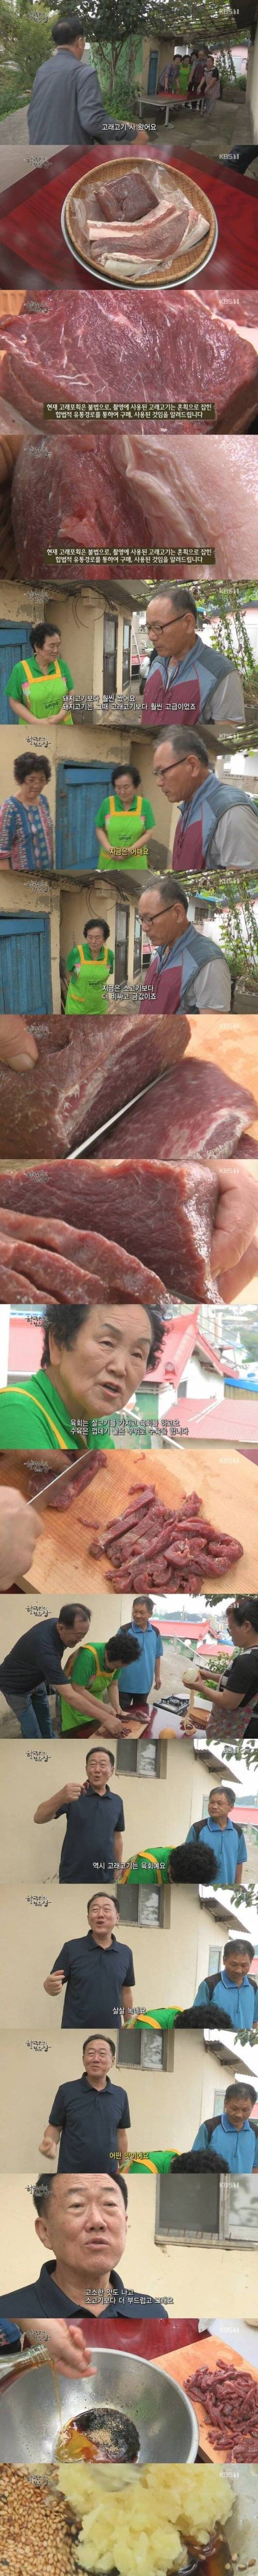 고래고기 요리.jpg